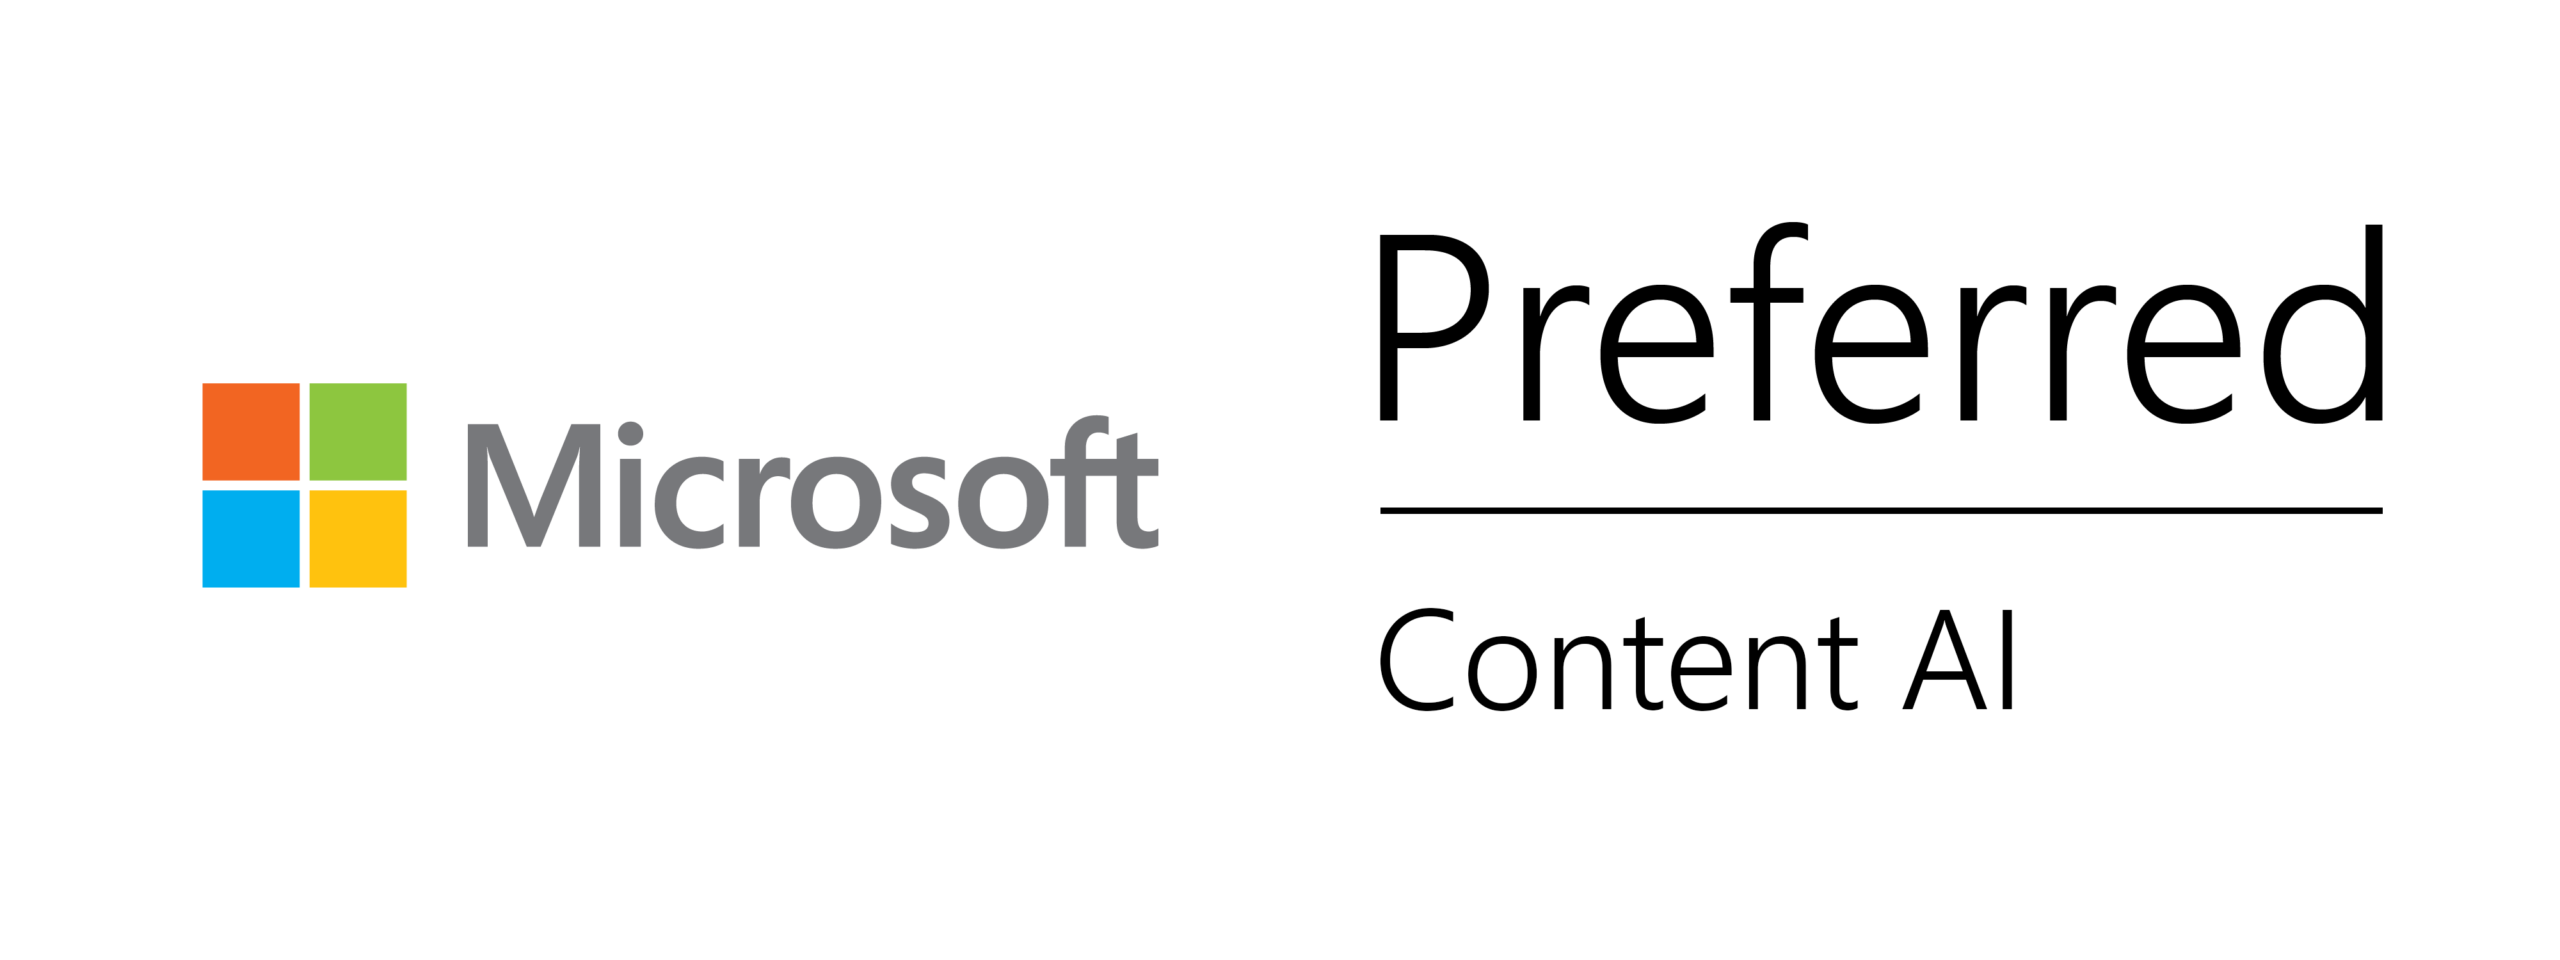 Microsoft Content AI Preferred Partner Status - Logo